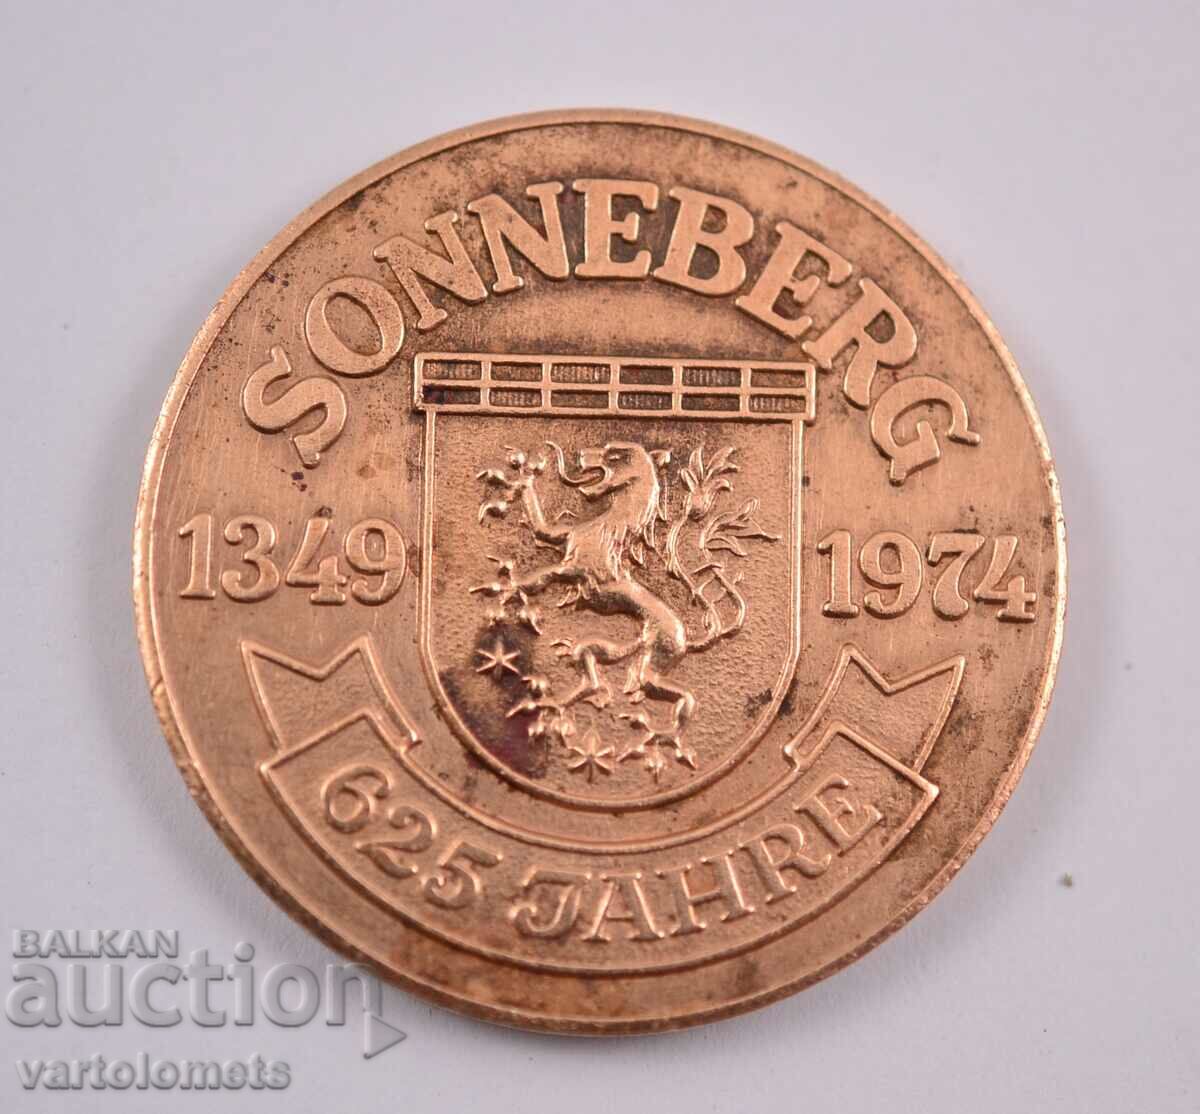 Plaque - SONNEBERG 1349 - 1974